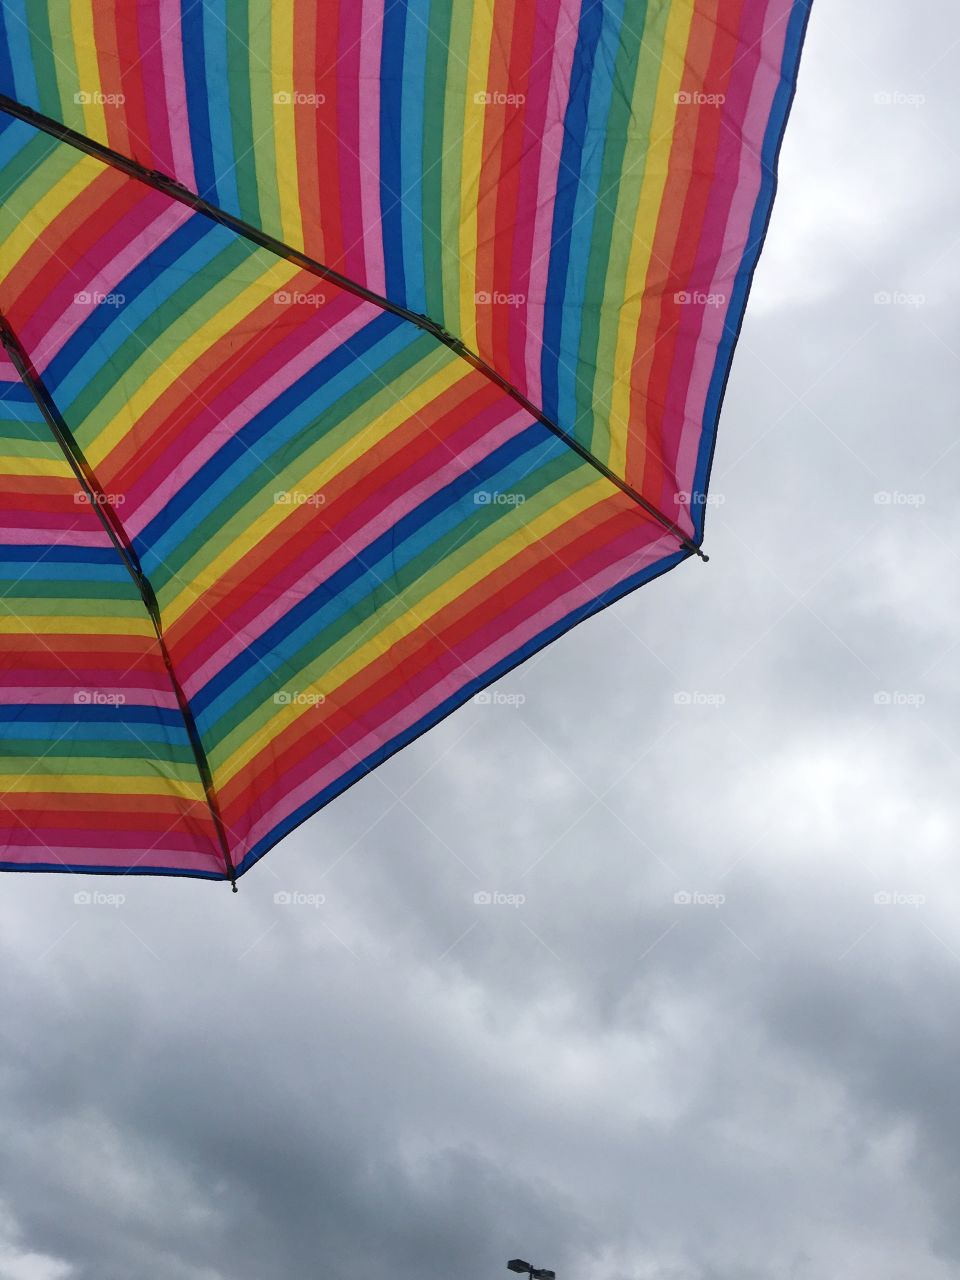 Rainbow umbrella against cloudy sky